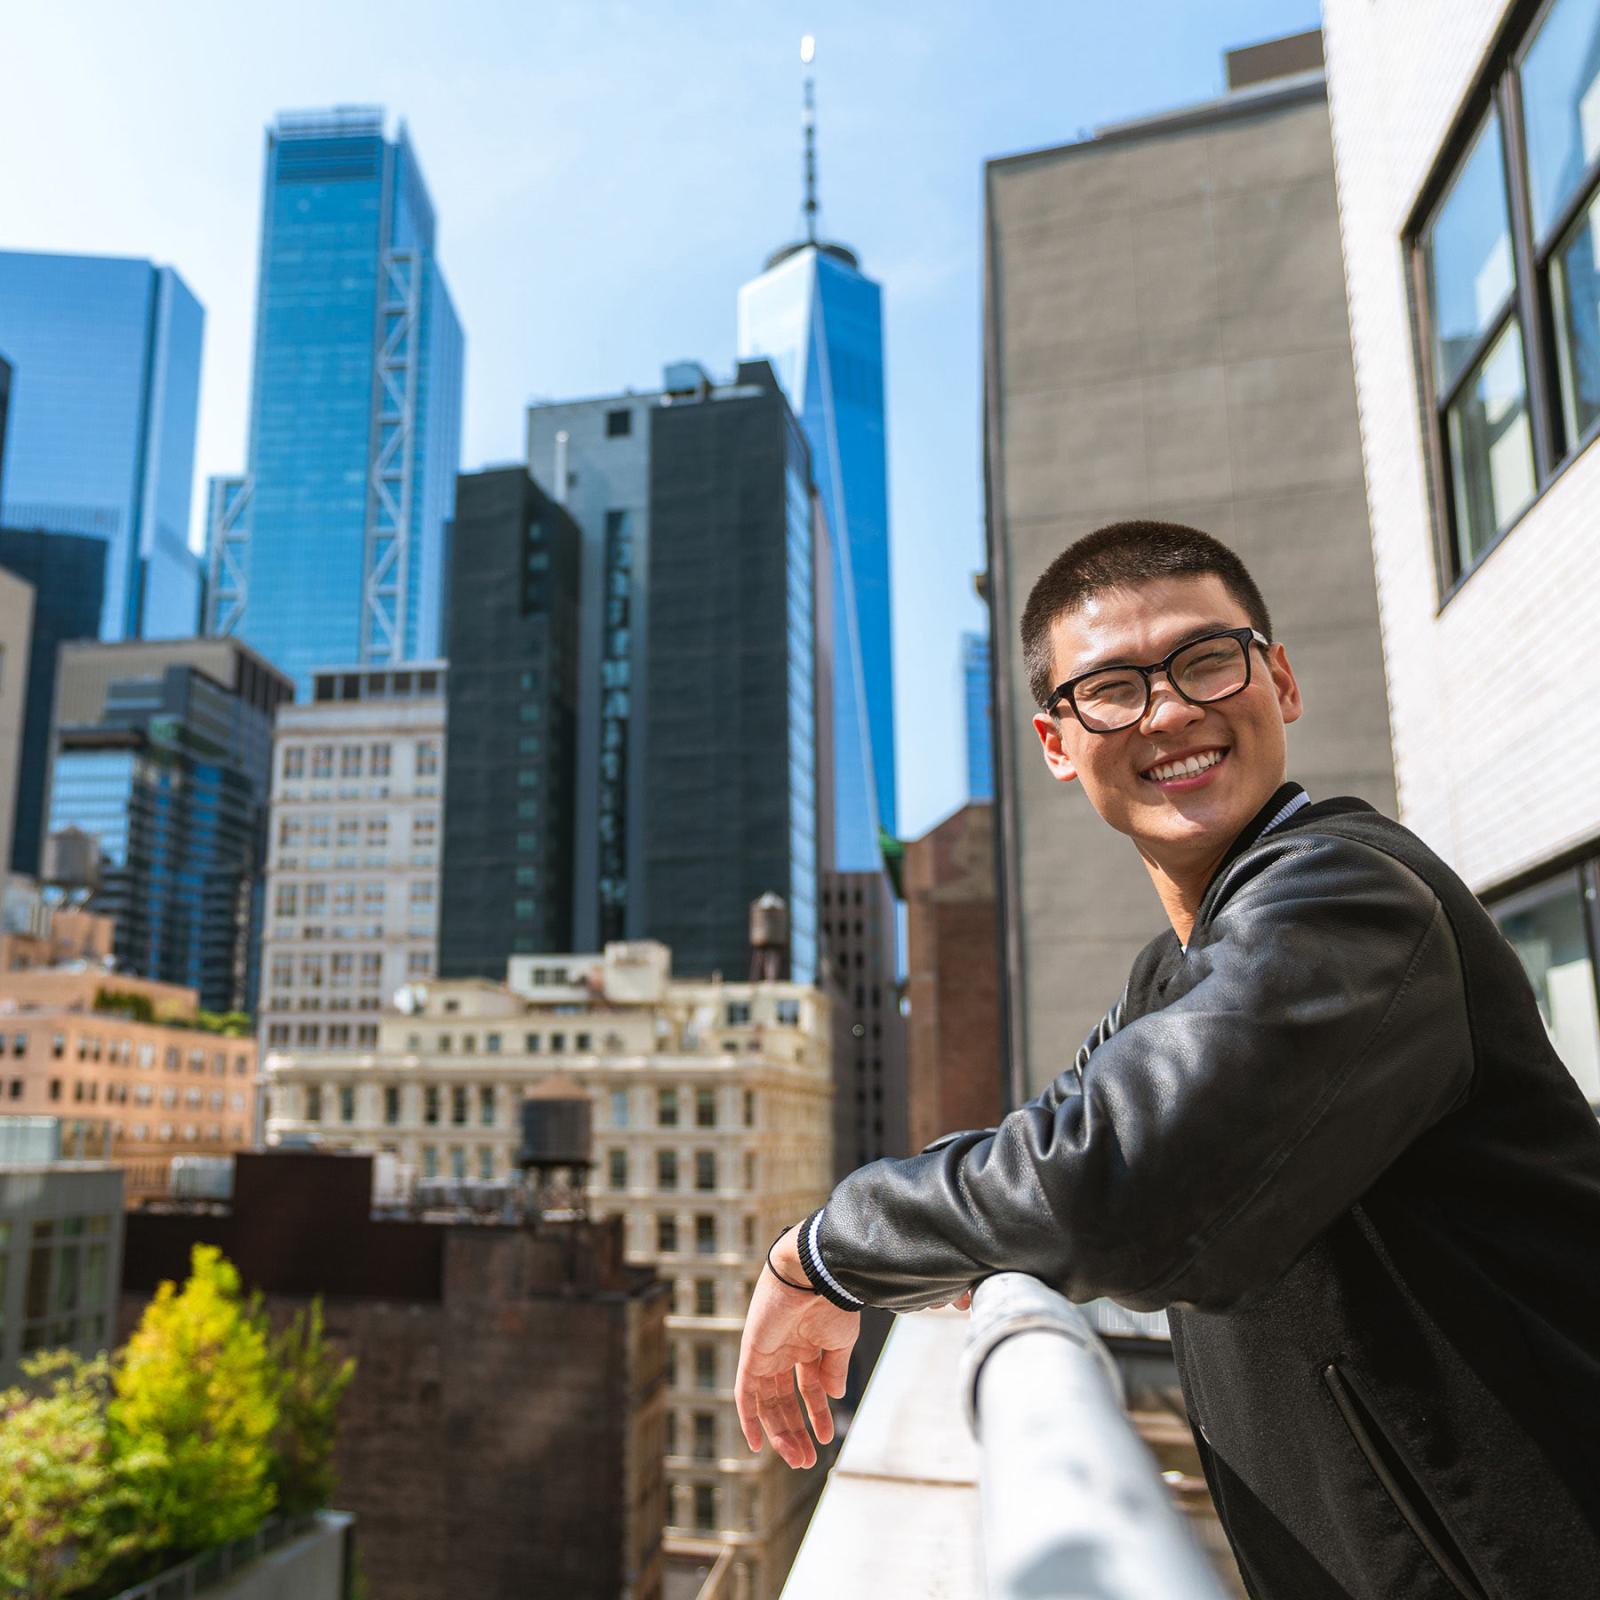 a ר student leans on a balcony with Manhattan buildings in the background